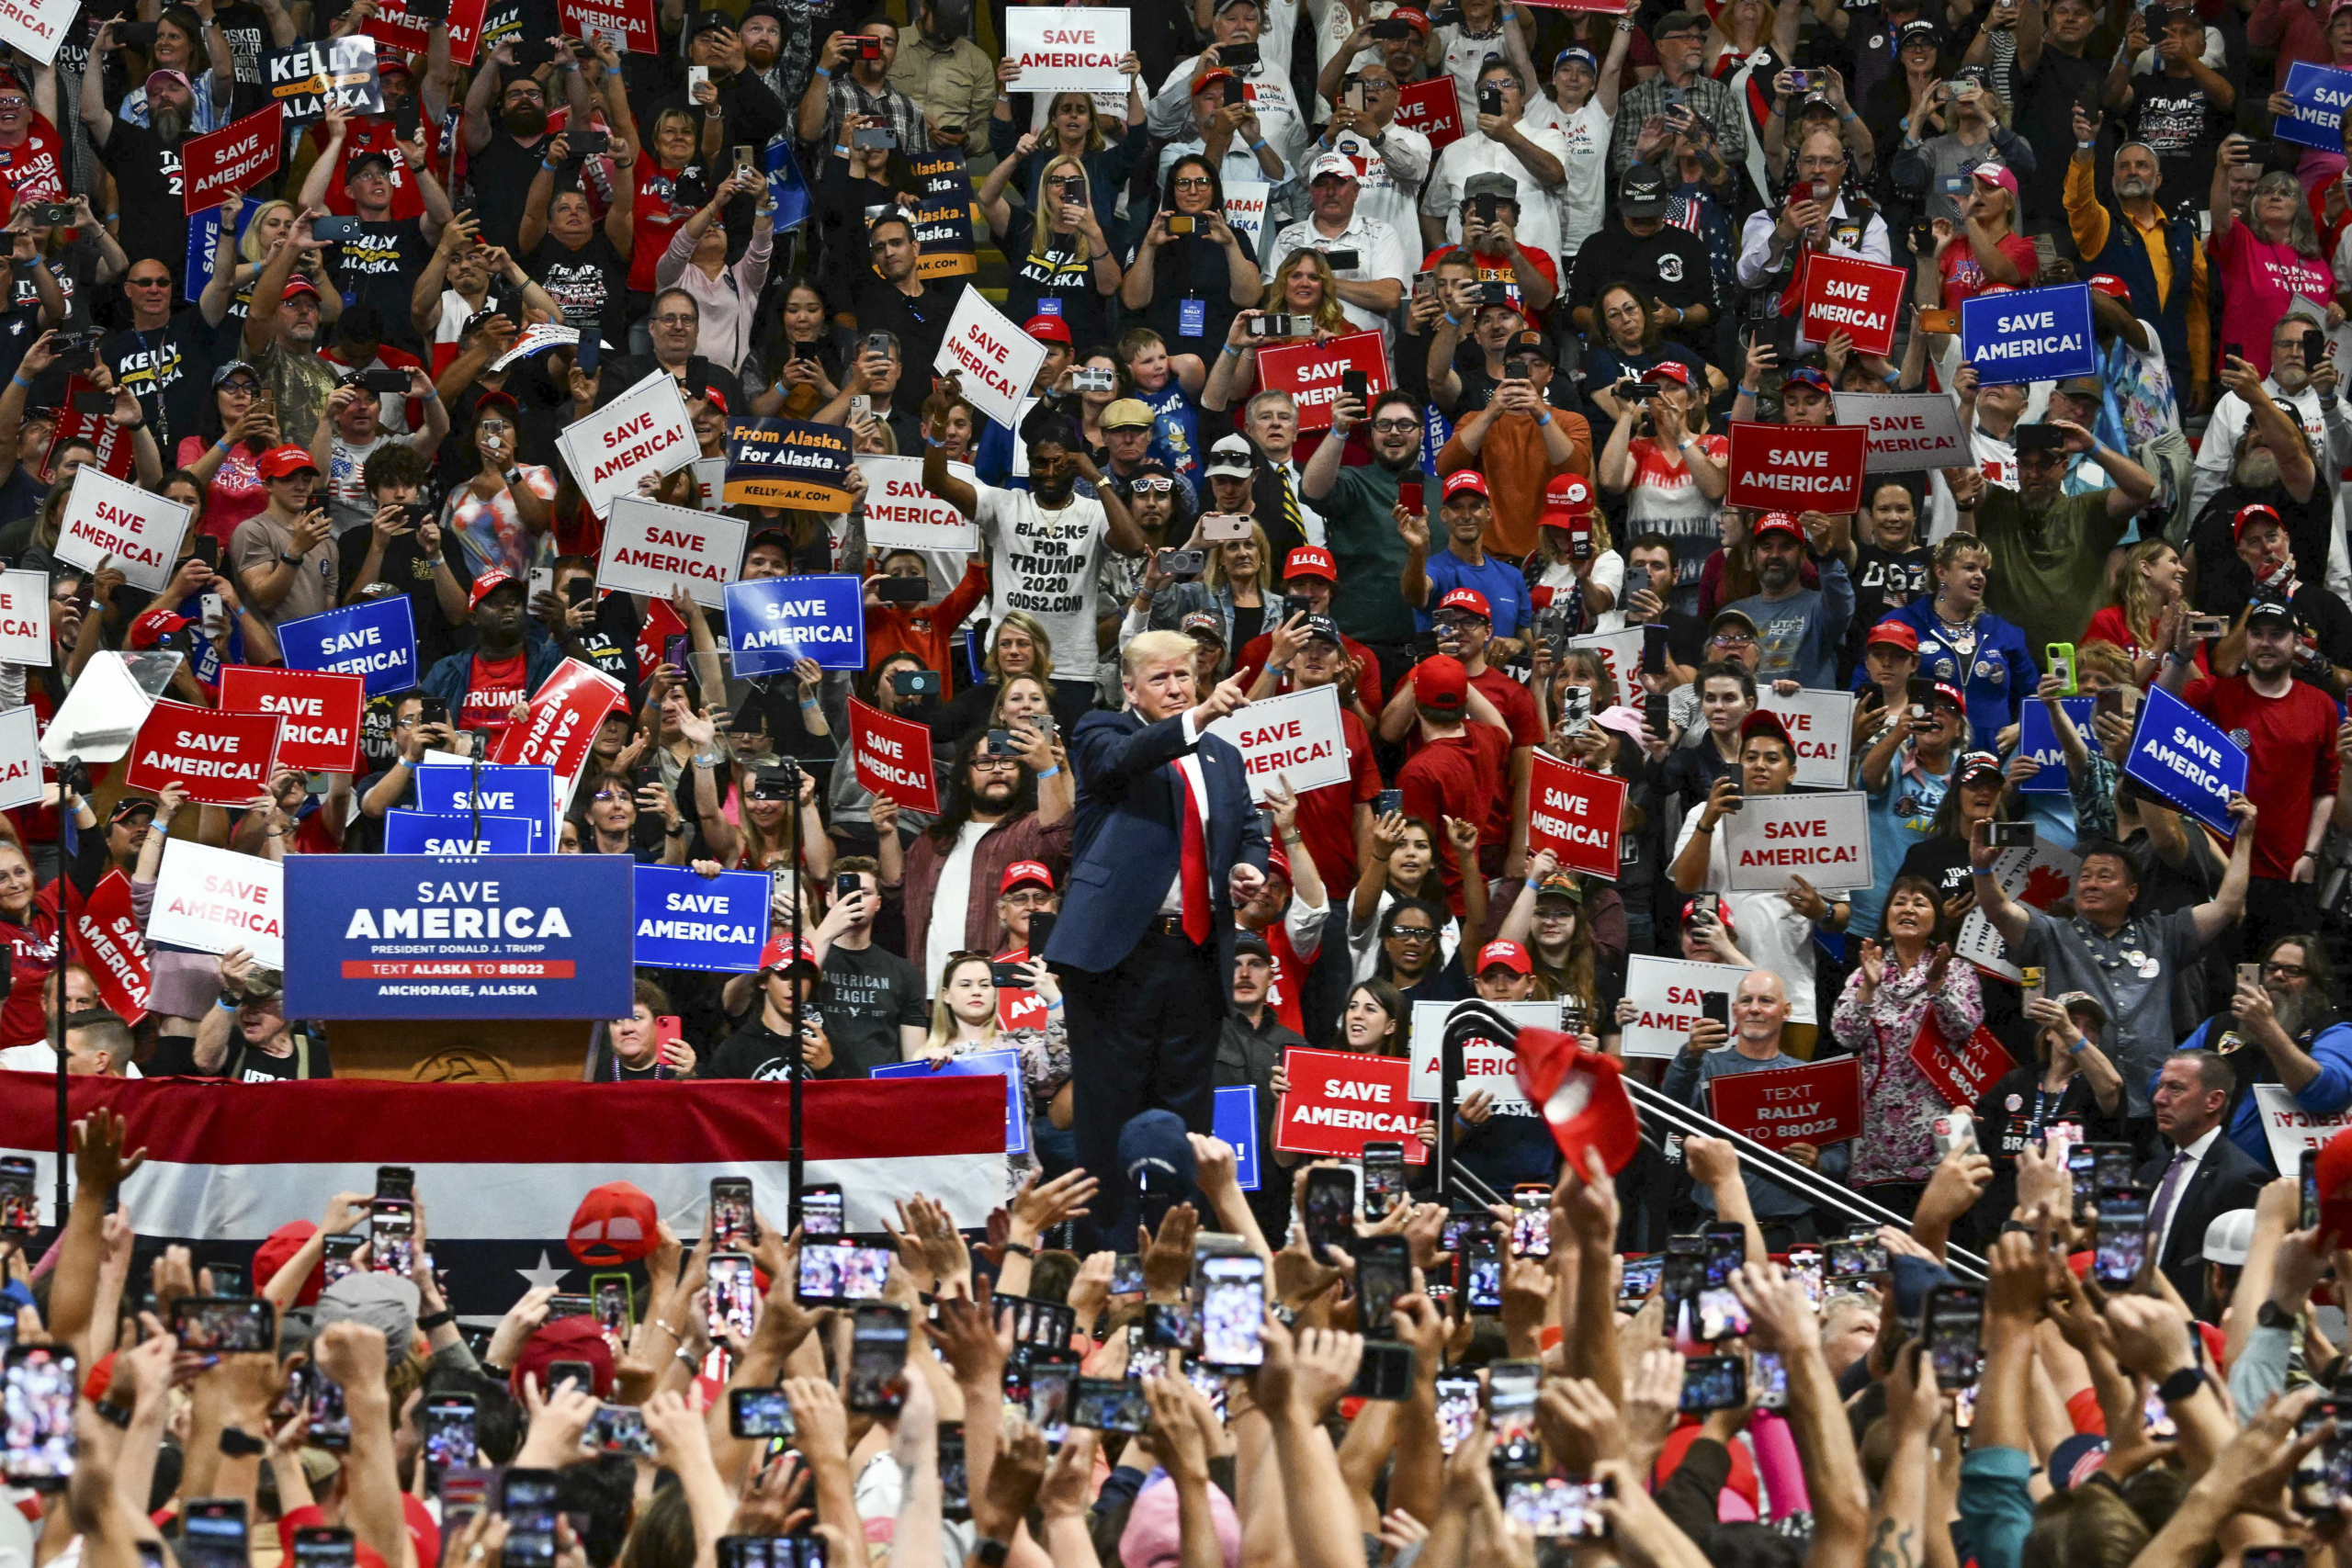 Mọi người trong đám đông cổ vũ khi cựu Tổng thống Donald Trump lên sân khấu trong một cuộc tập hợp vận động tranh cử ủng hộ các ứng cử viên Đảng Cộng Hòa ở Anchorage, Alaska, vào ngày 09/07/2022. (Ảnh: Patrick T. Fallon/AFP qua Getty Images)